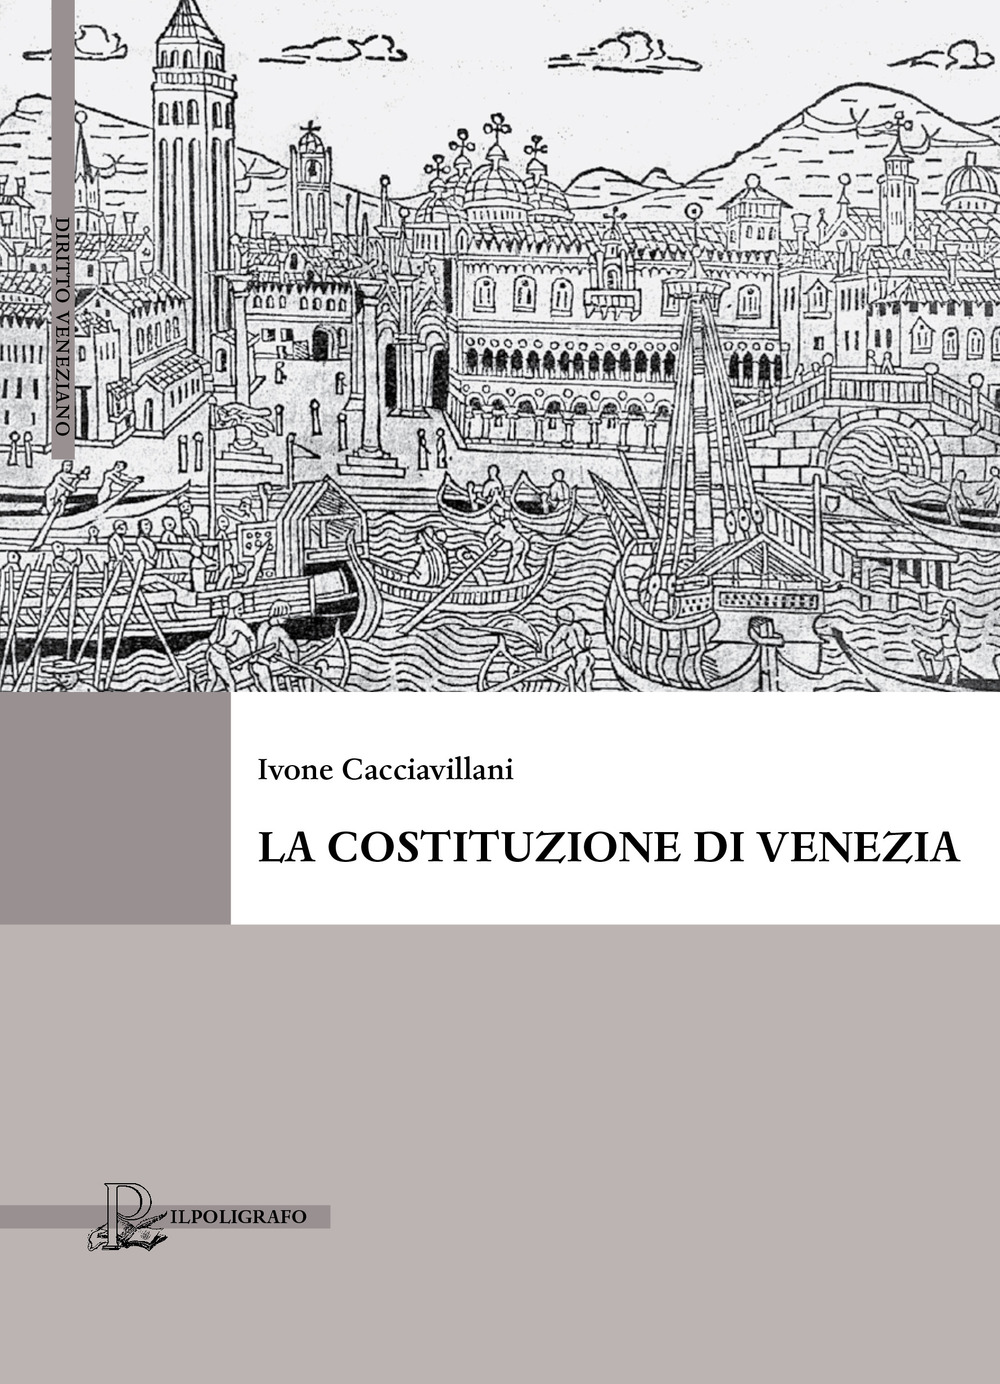 La Costituzione di Venezia